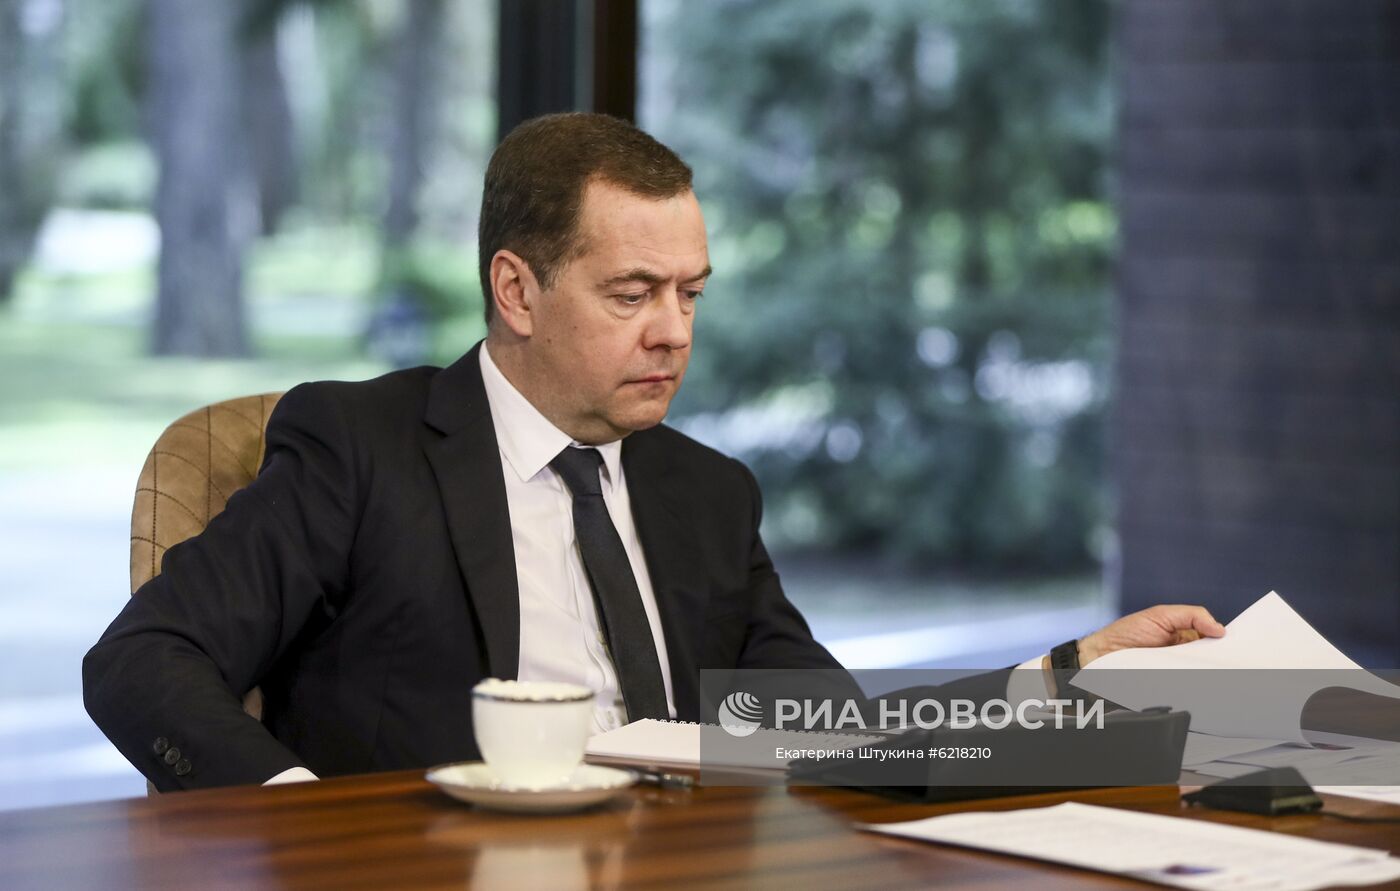 Заместитель председателя Совбеза РФ Д. Медведев принял участие в международном юридическом форуме